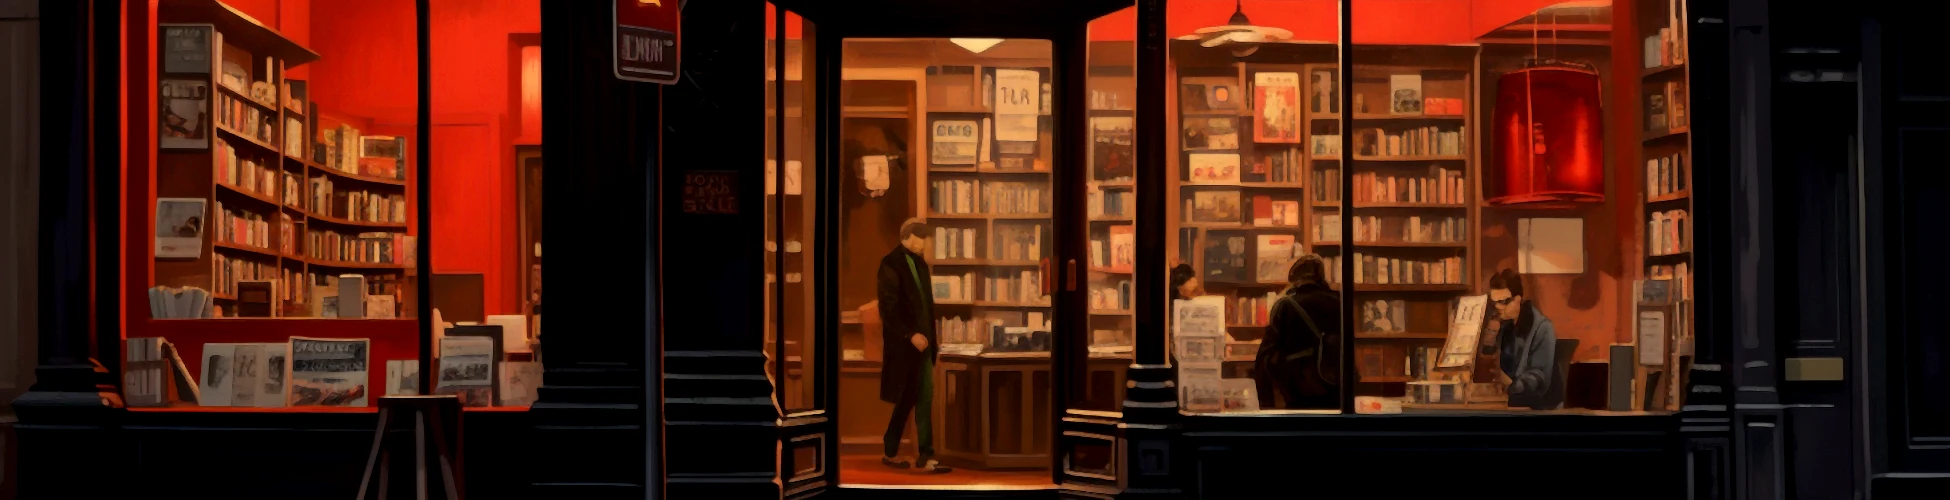 Immagine artistica di un negozio di libri